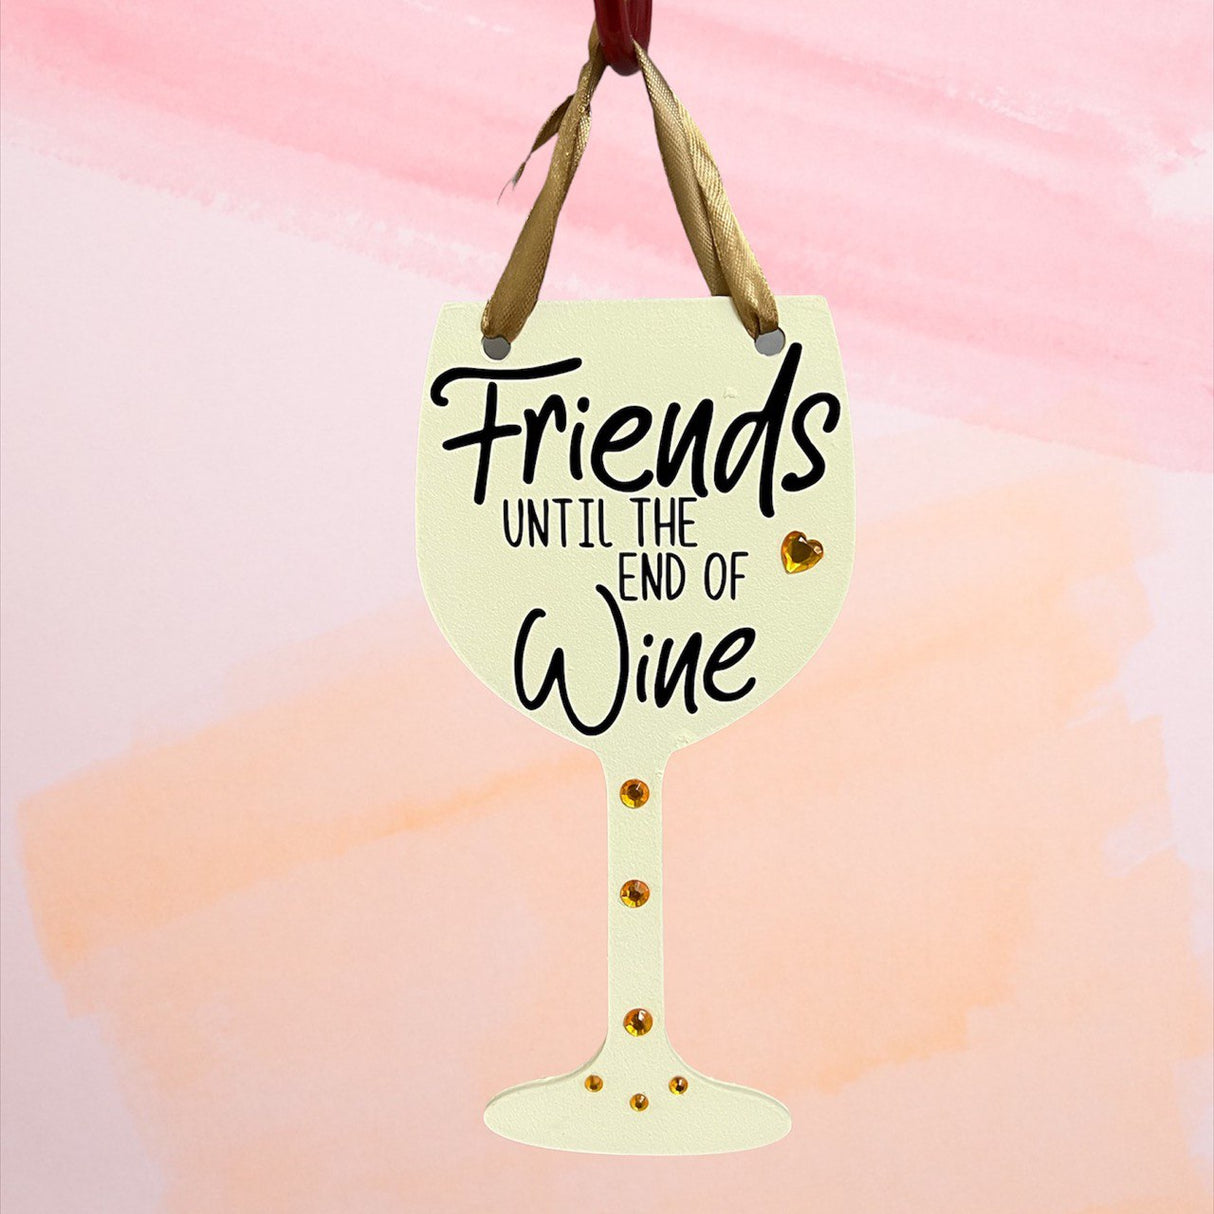 Vino: Fin del vino blanco